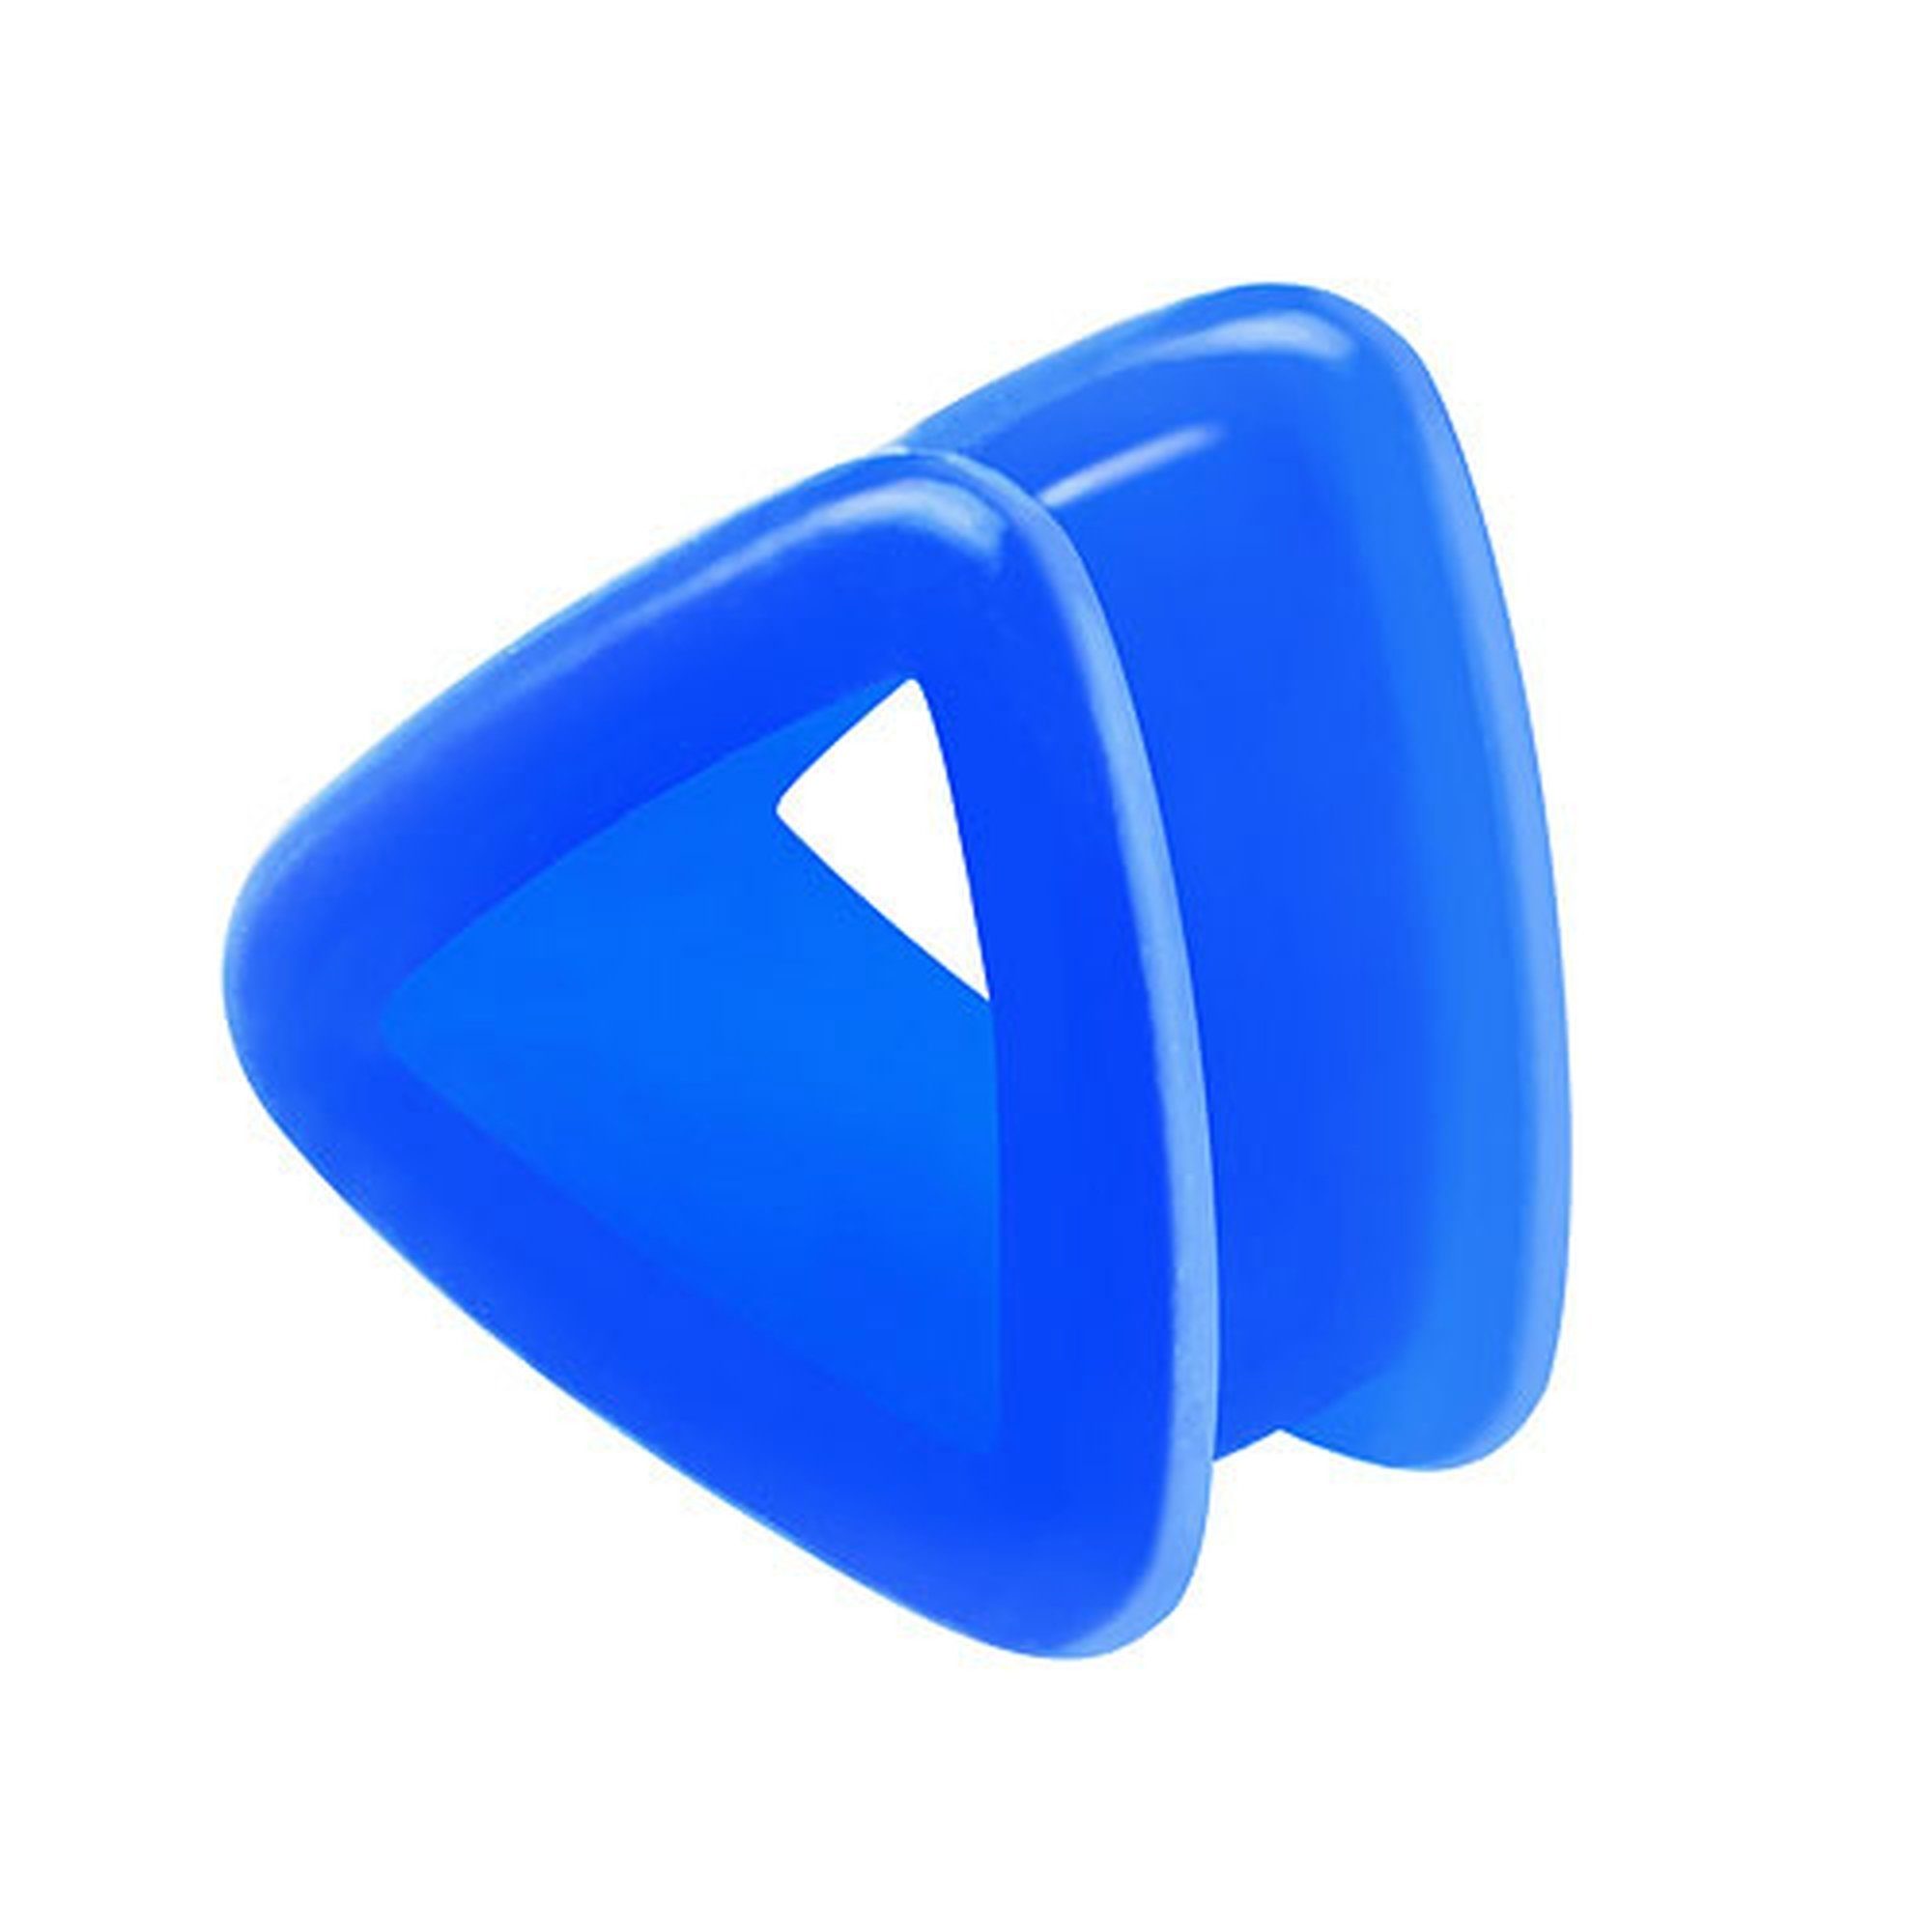 Taffstyle Plug Piercing Flexibel Ohr Plug Dreieck, Bunt Silikon Flesh Tunnel Plug Dreieck Piercing Flexibel Ohrpiercing Blau